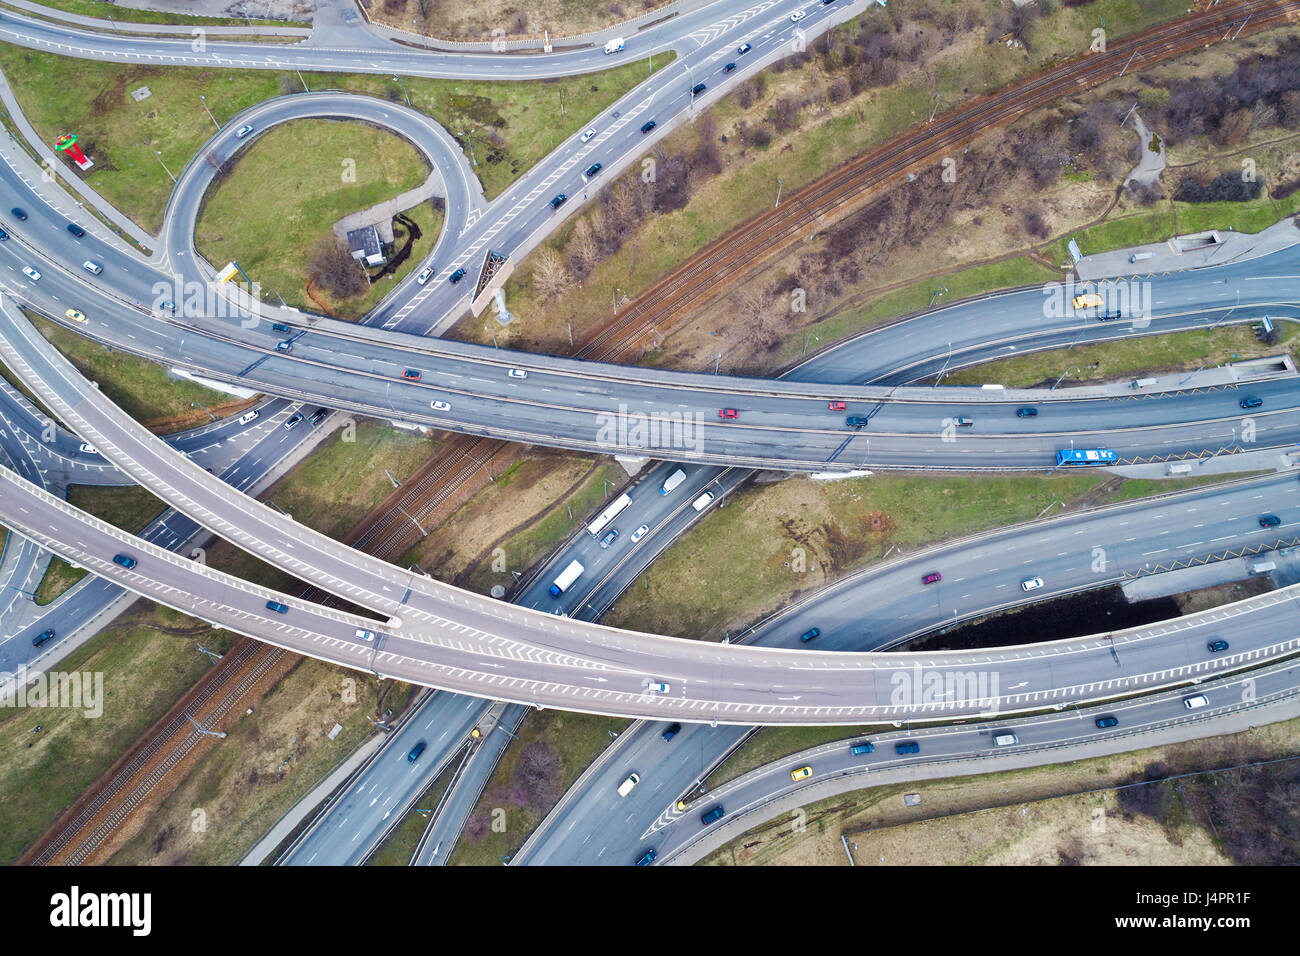 Vista aerea di una autostrada intersezione. Fotografia aerea Foto Stock